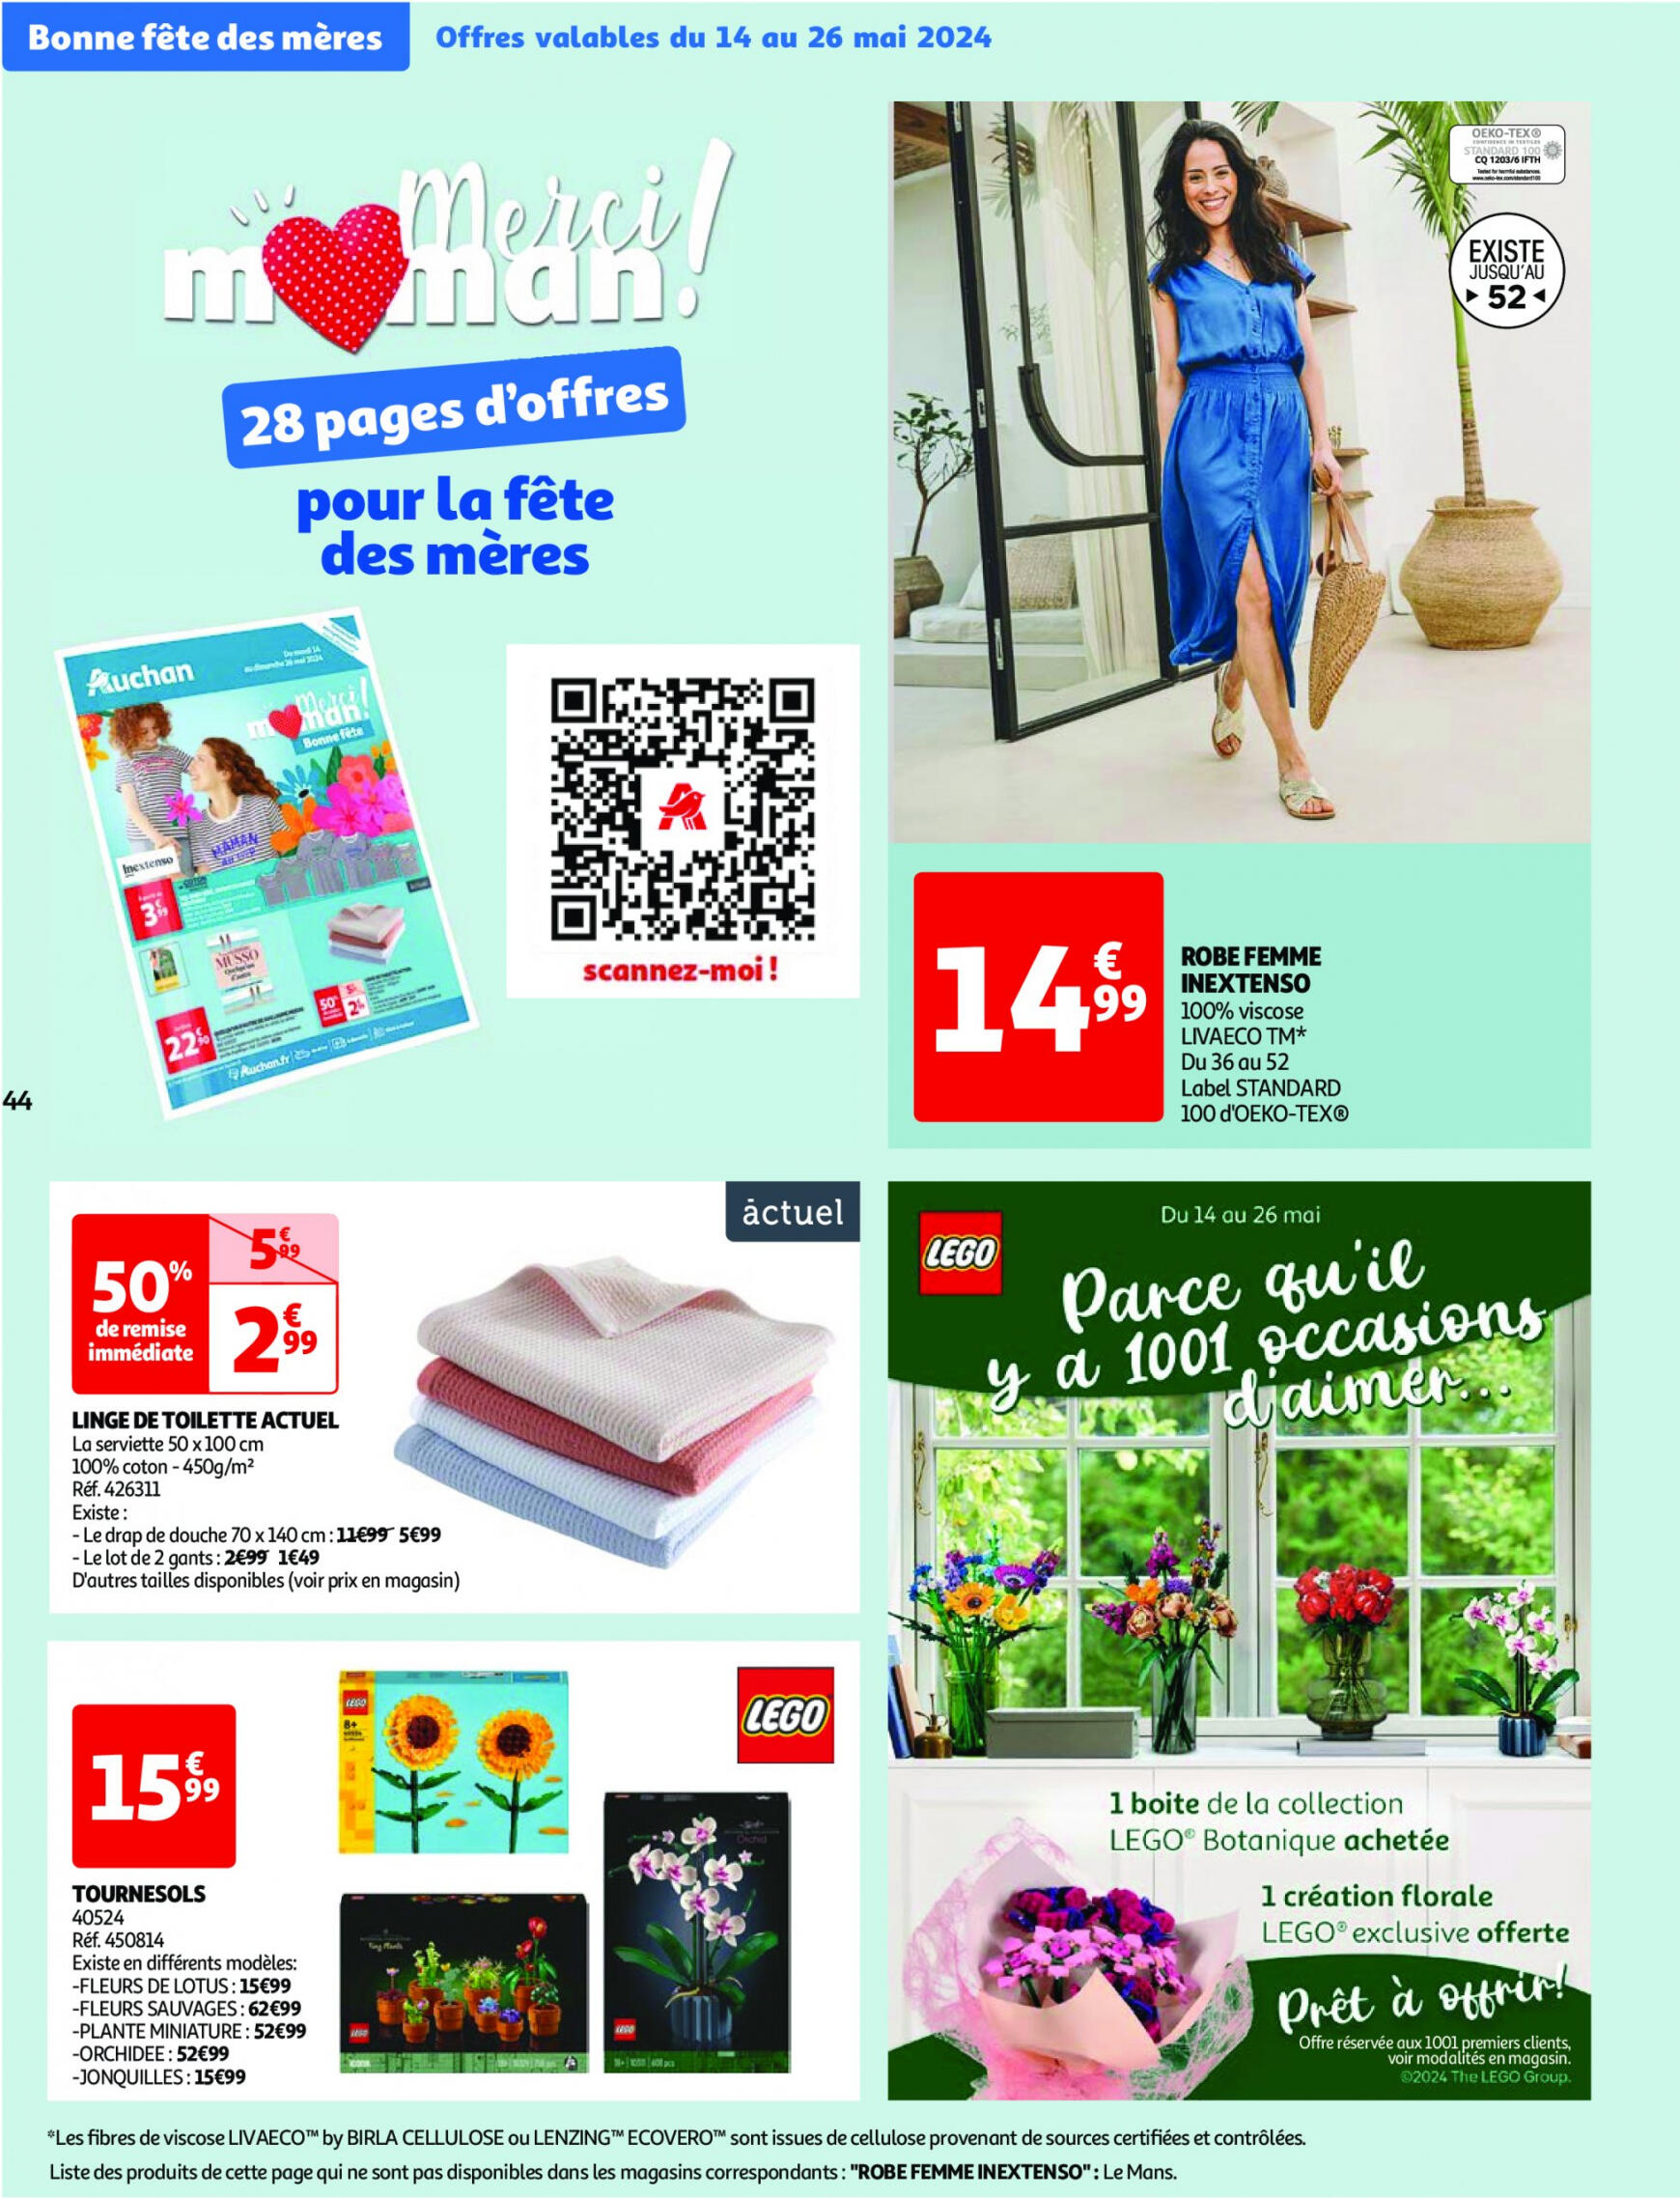 auchan - Prospectus Auchan actuel 14.05. - 21.05. - page: 44